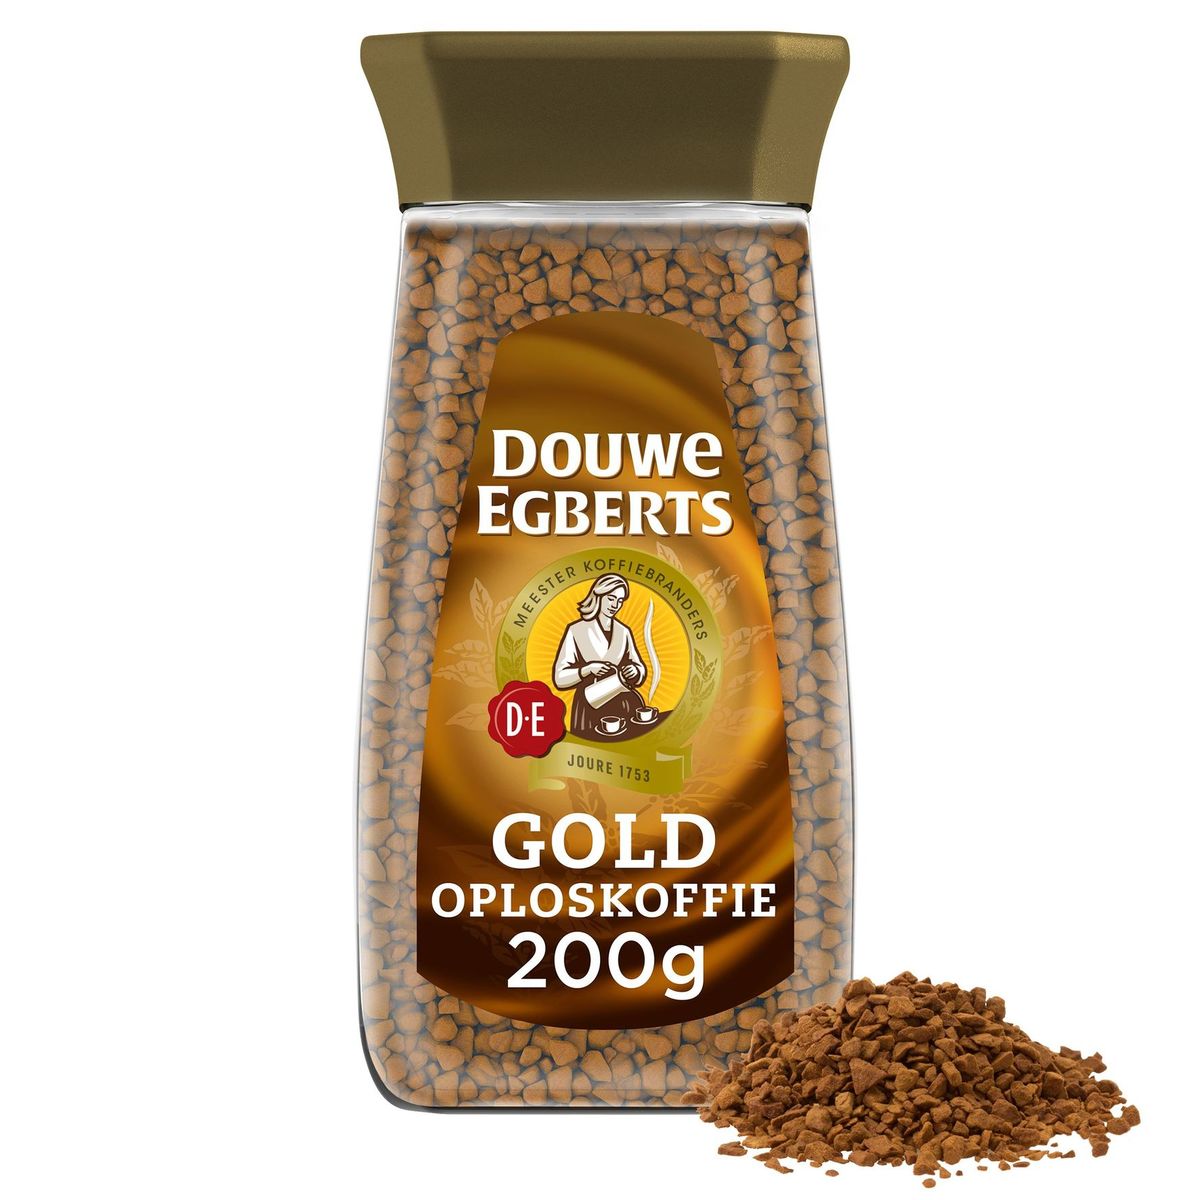 DOUWE EGBERTS Oploskoffie Gold 200g